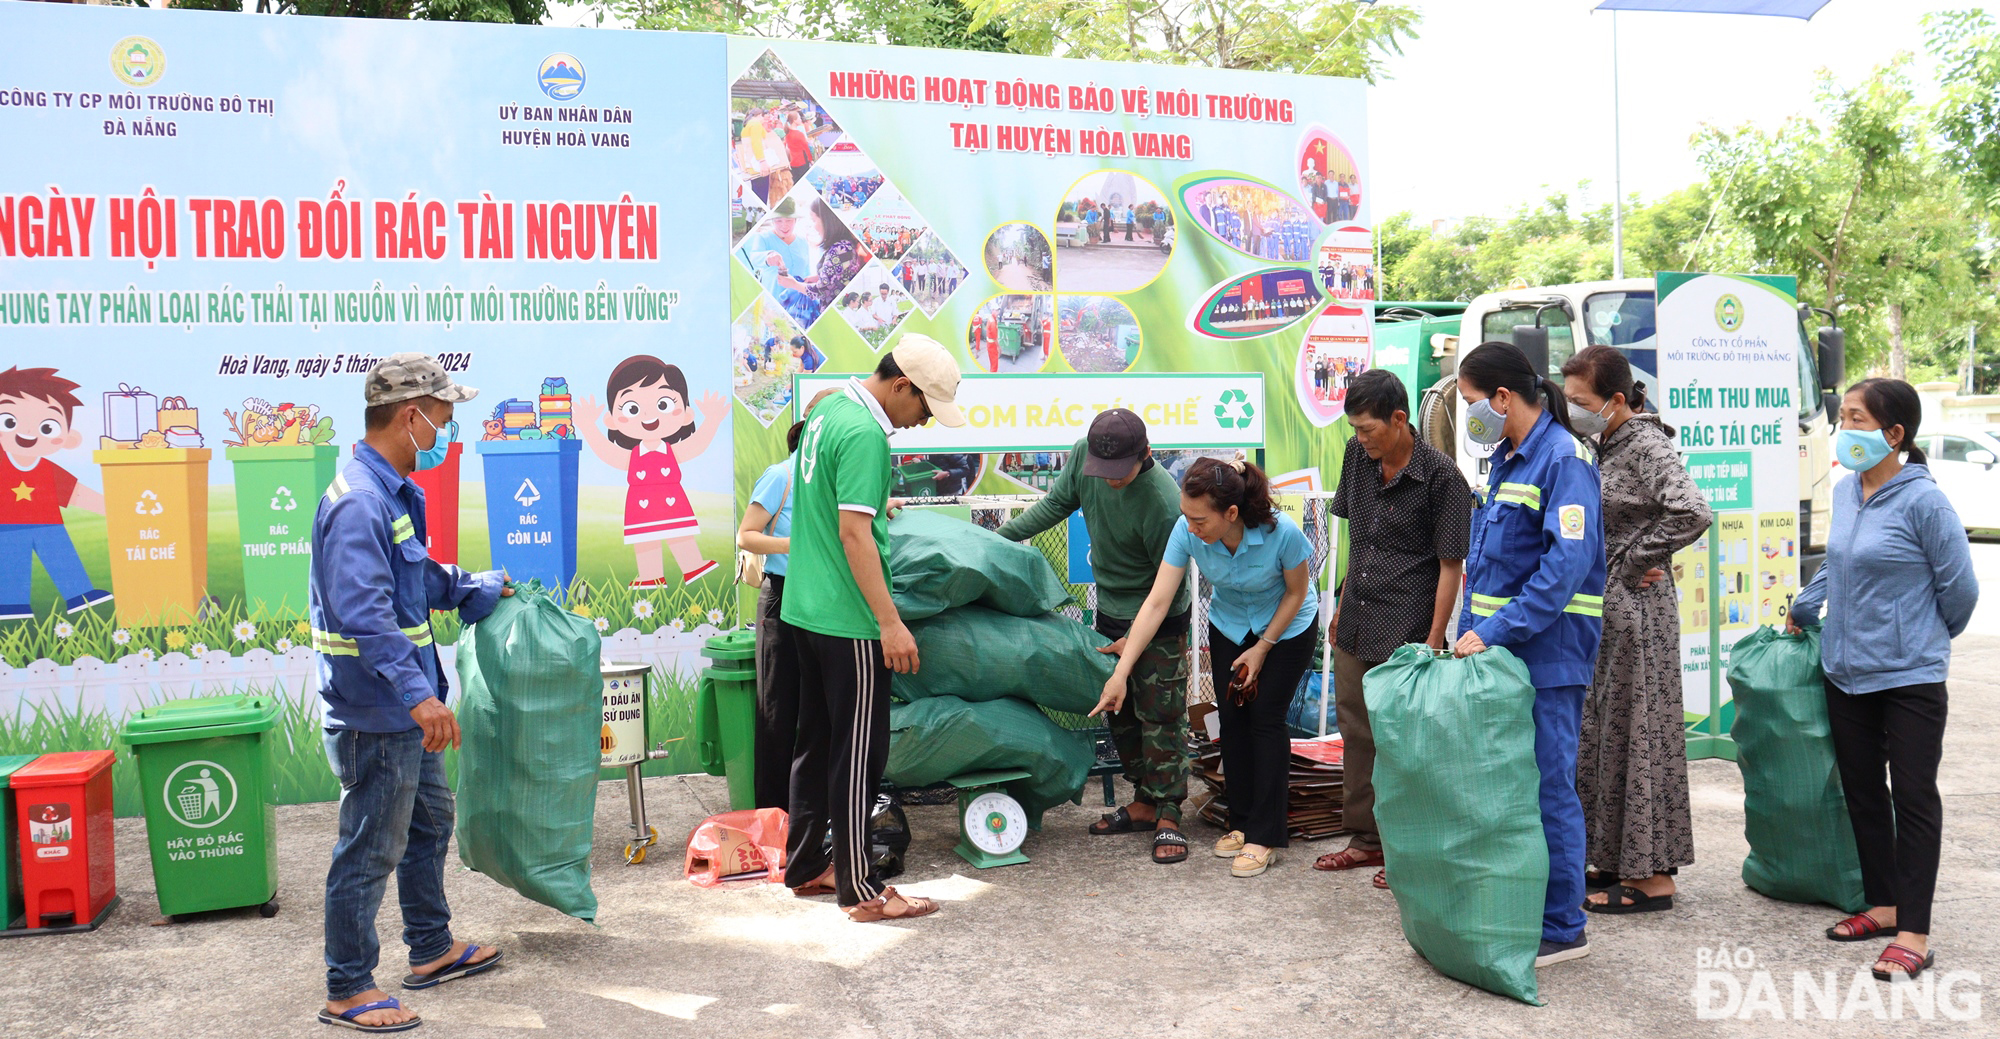 Rất nhiều rác tái chế sau phân loại rác tại các hộ gia đình trên địa bàn huyện Hòa Vang được thu mua. Ảnh: HOÀNG HIỆP